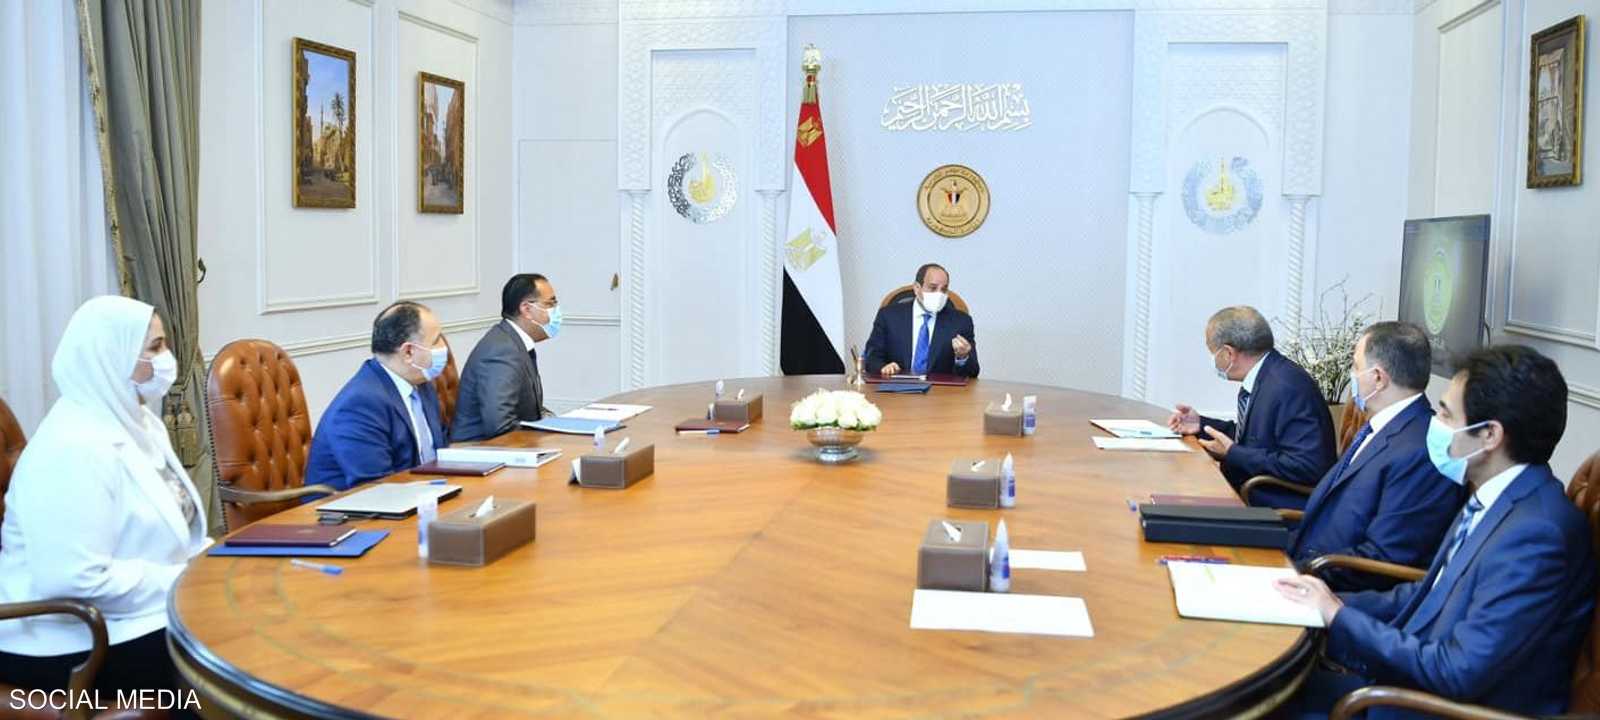 من الاجتماع الذي عقده الرئيس المصري